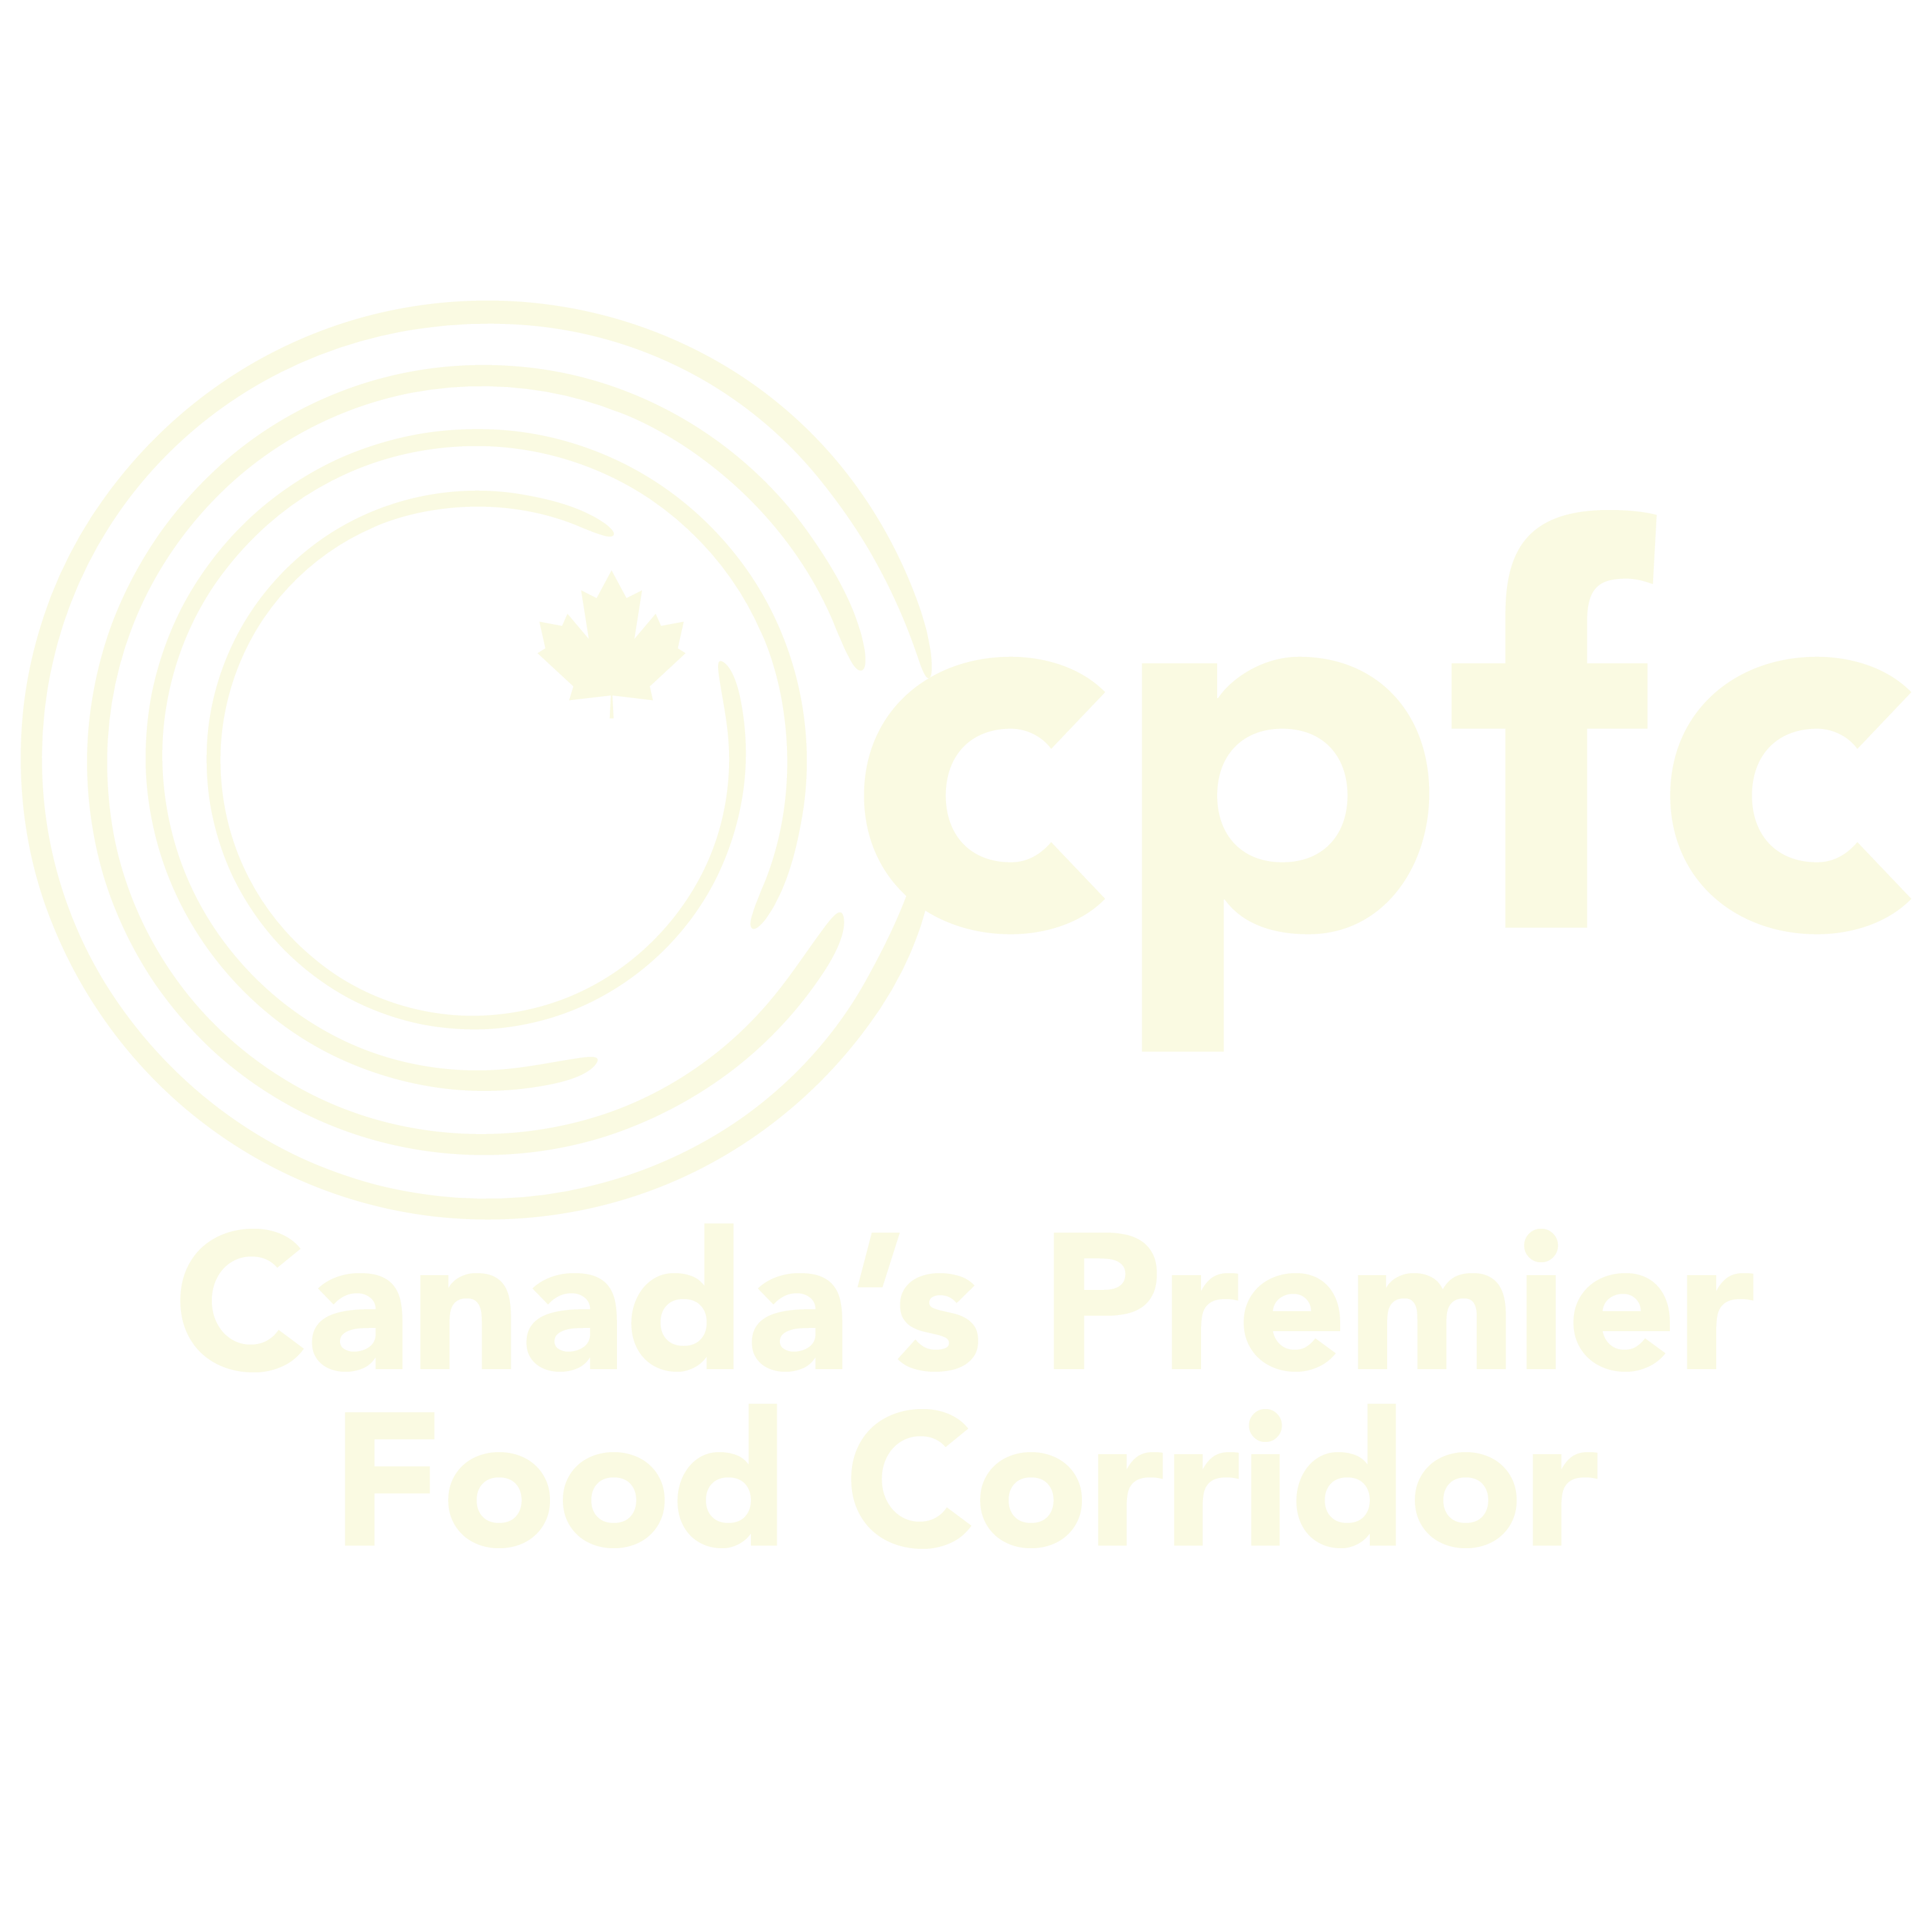 Canada's Premier Food Corridor